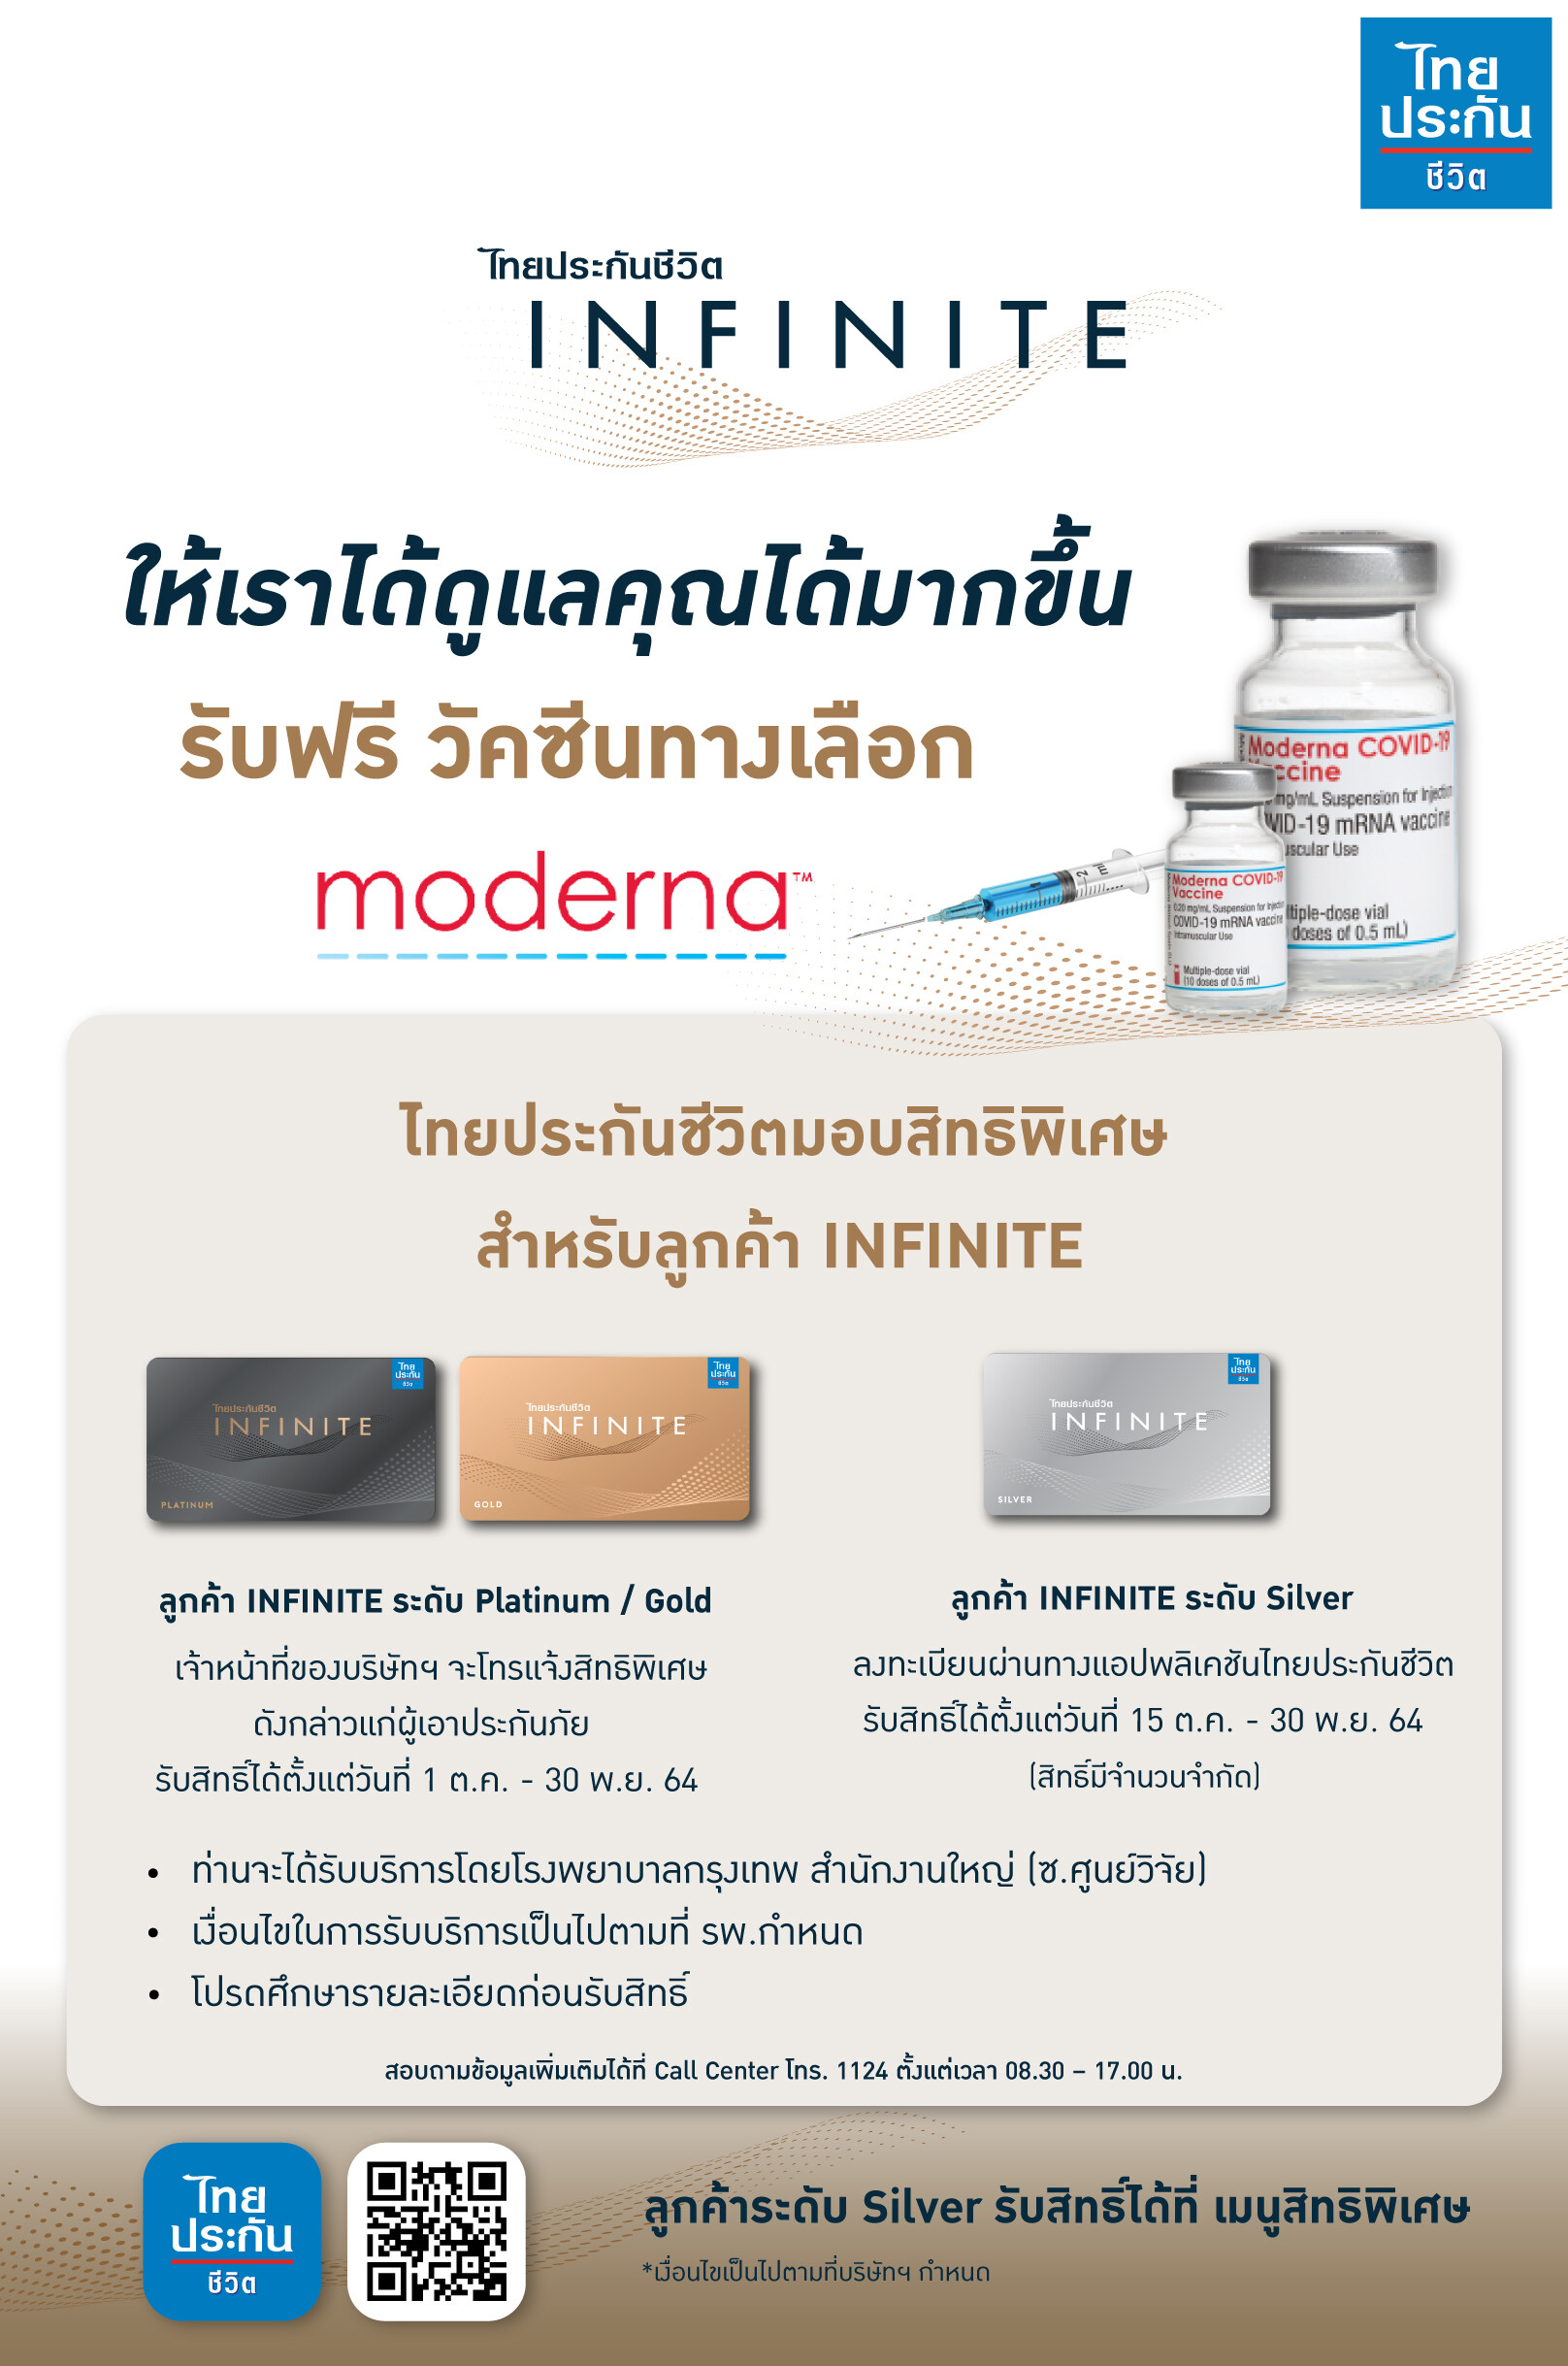 ไทยประกันชีวิต มอบสิทธิพิเศษแก่สมาชิกไทยประกันชีวิต INFINITE รับฟรีวัคซีนทางเลือกโควิด-19